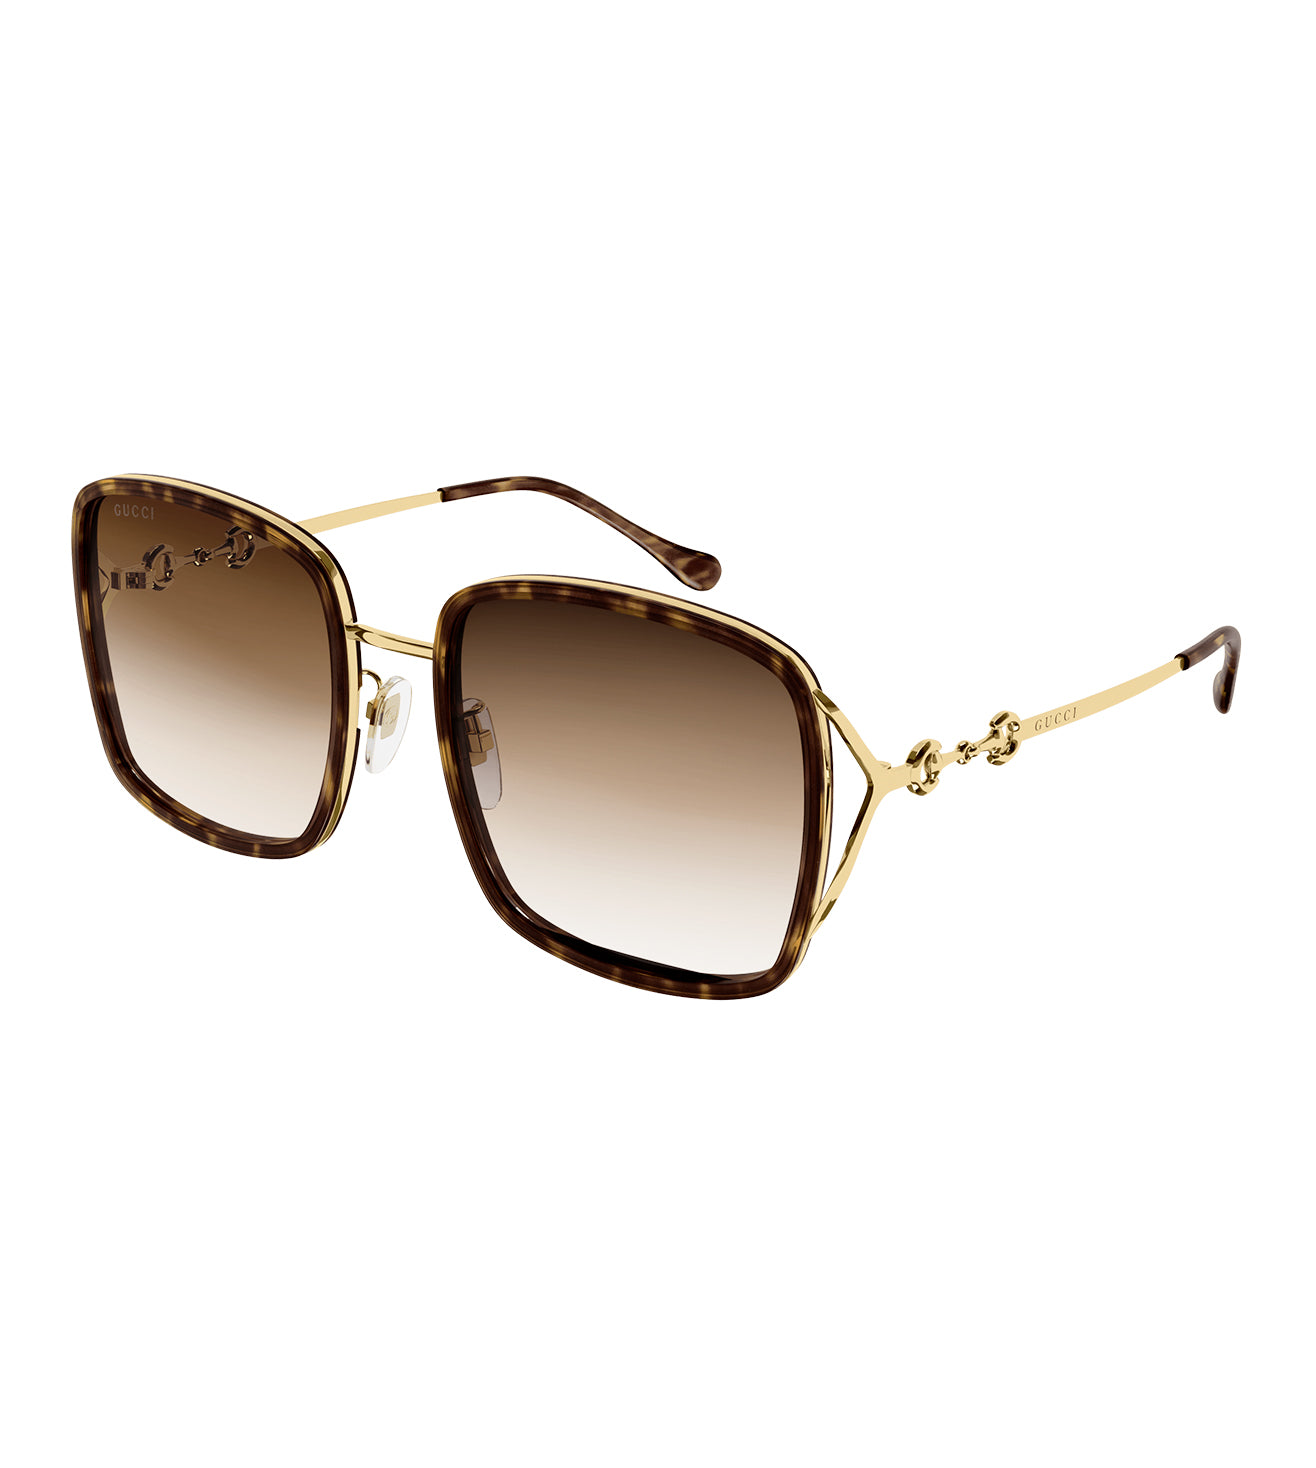 Gucci Women's Brown Square Sunglasses